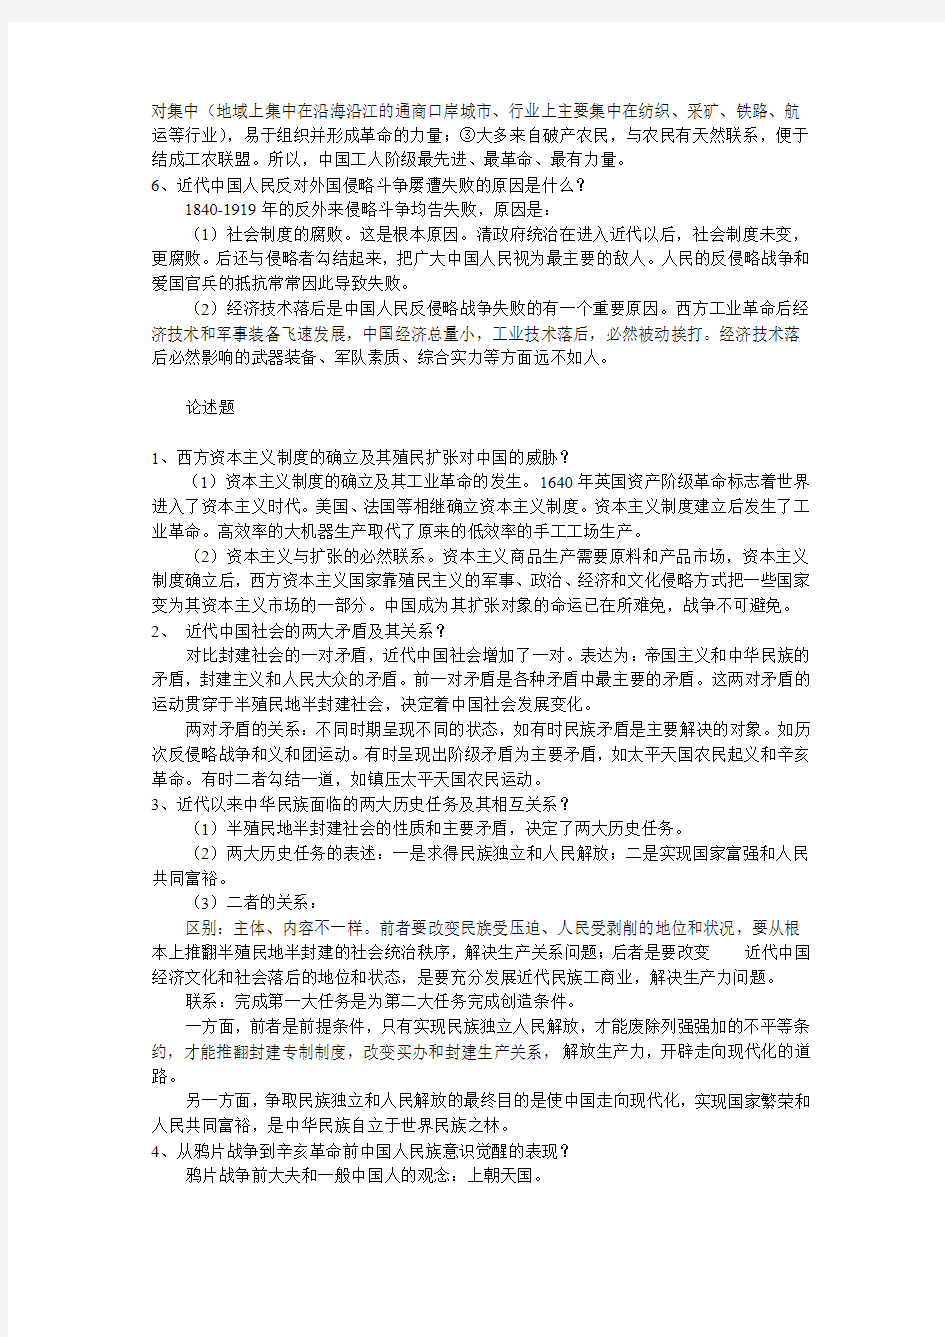 2011年自考《中国行政史》复习资料第七章